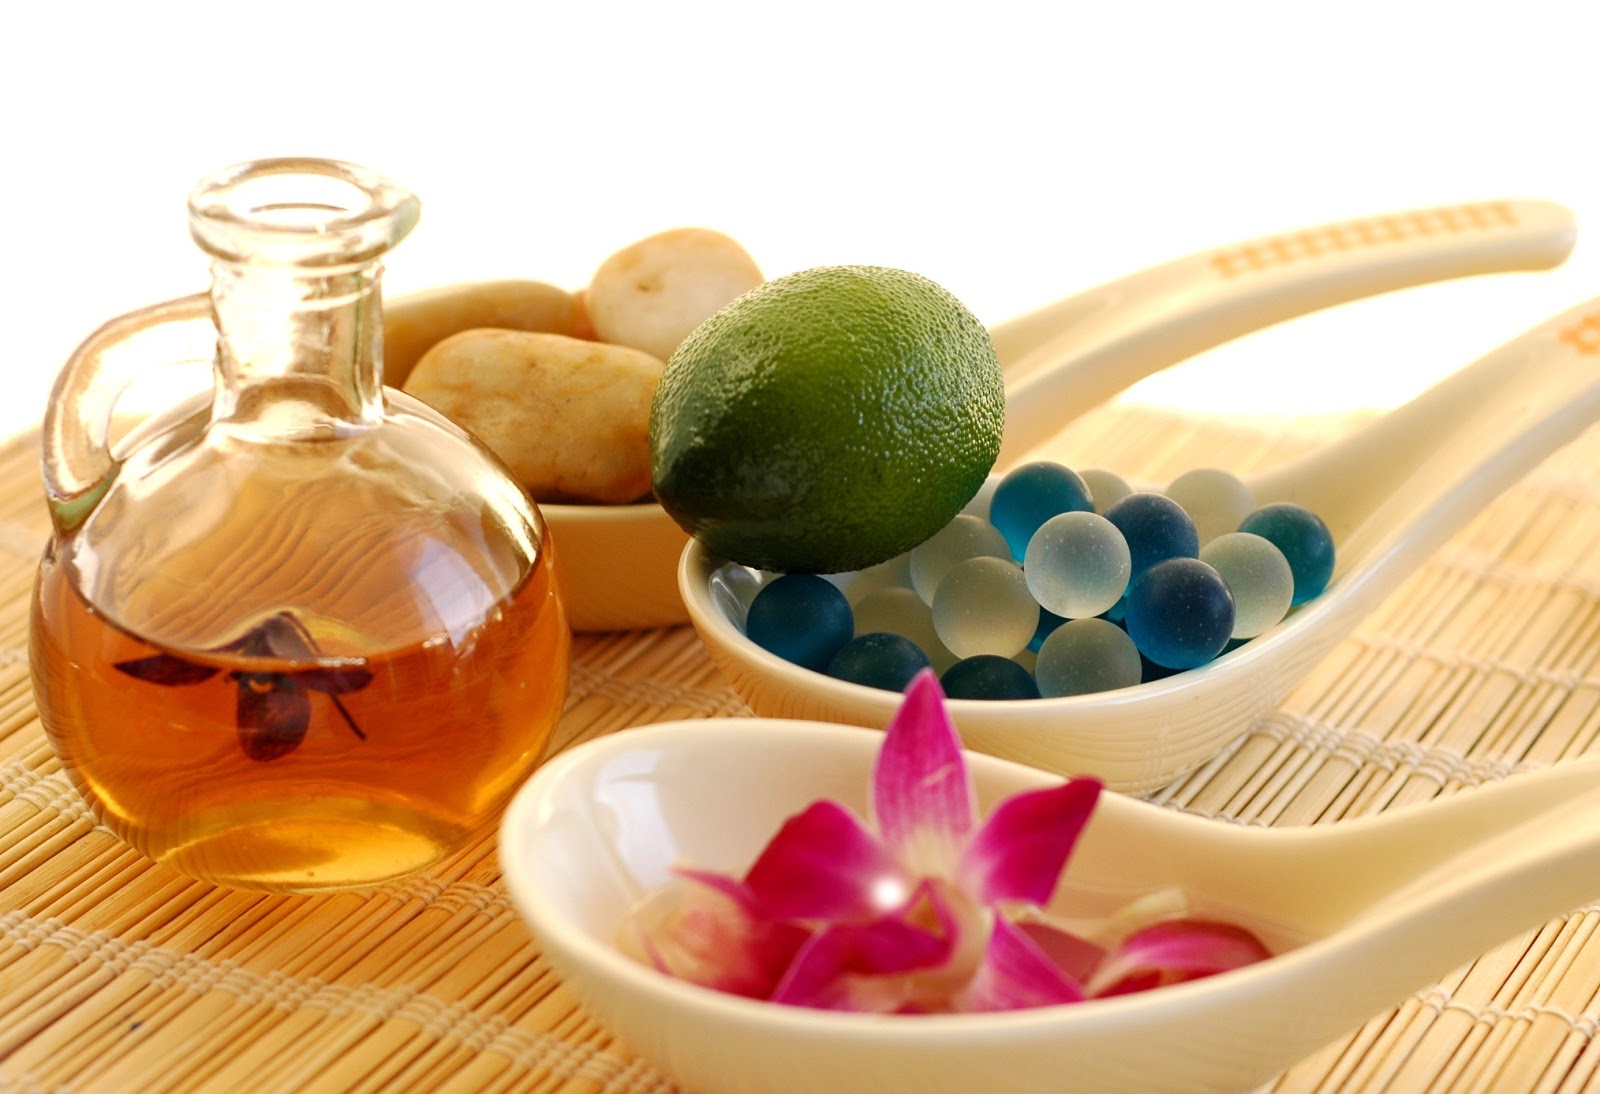 Minyak atsiri bisa digunakan untuk aromatheraphy. Foto: wikipedia